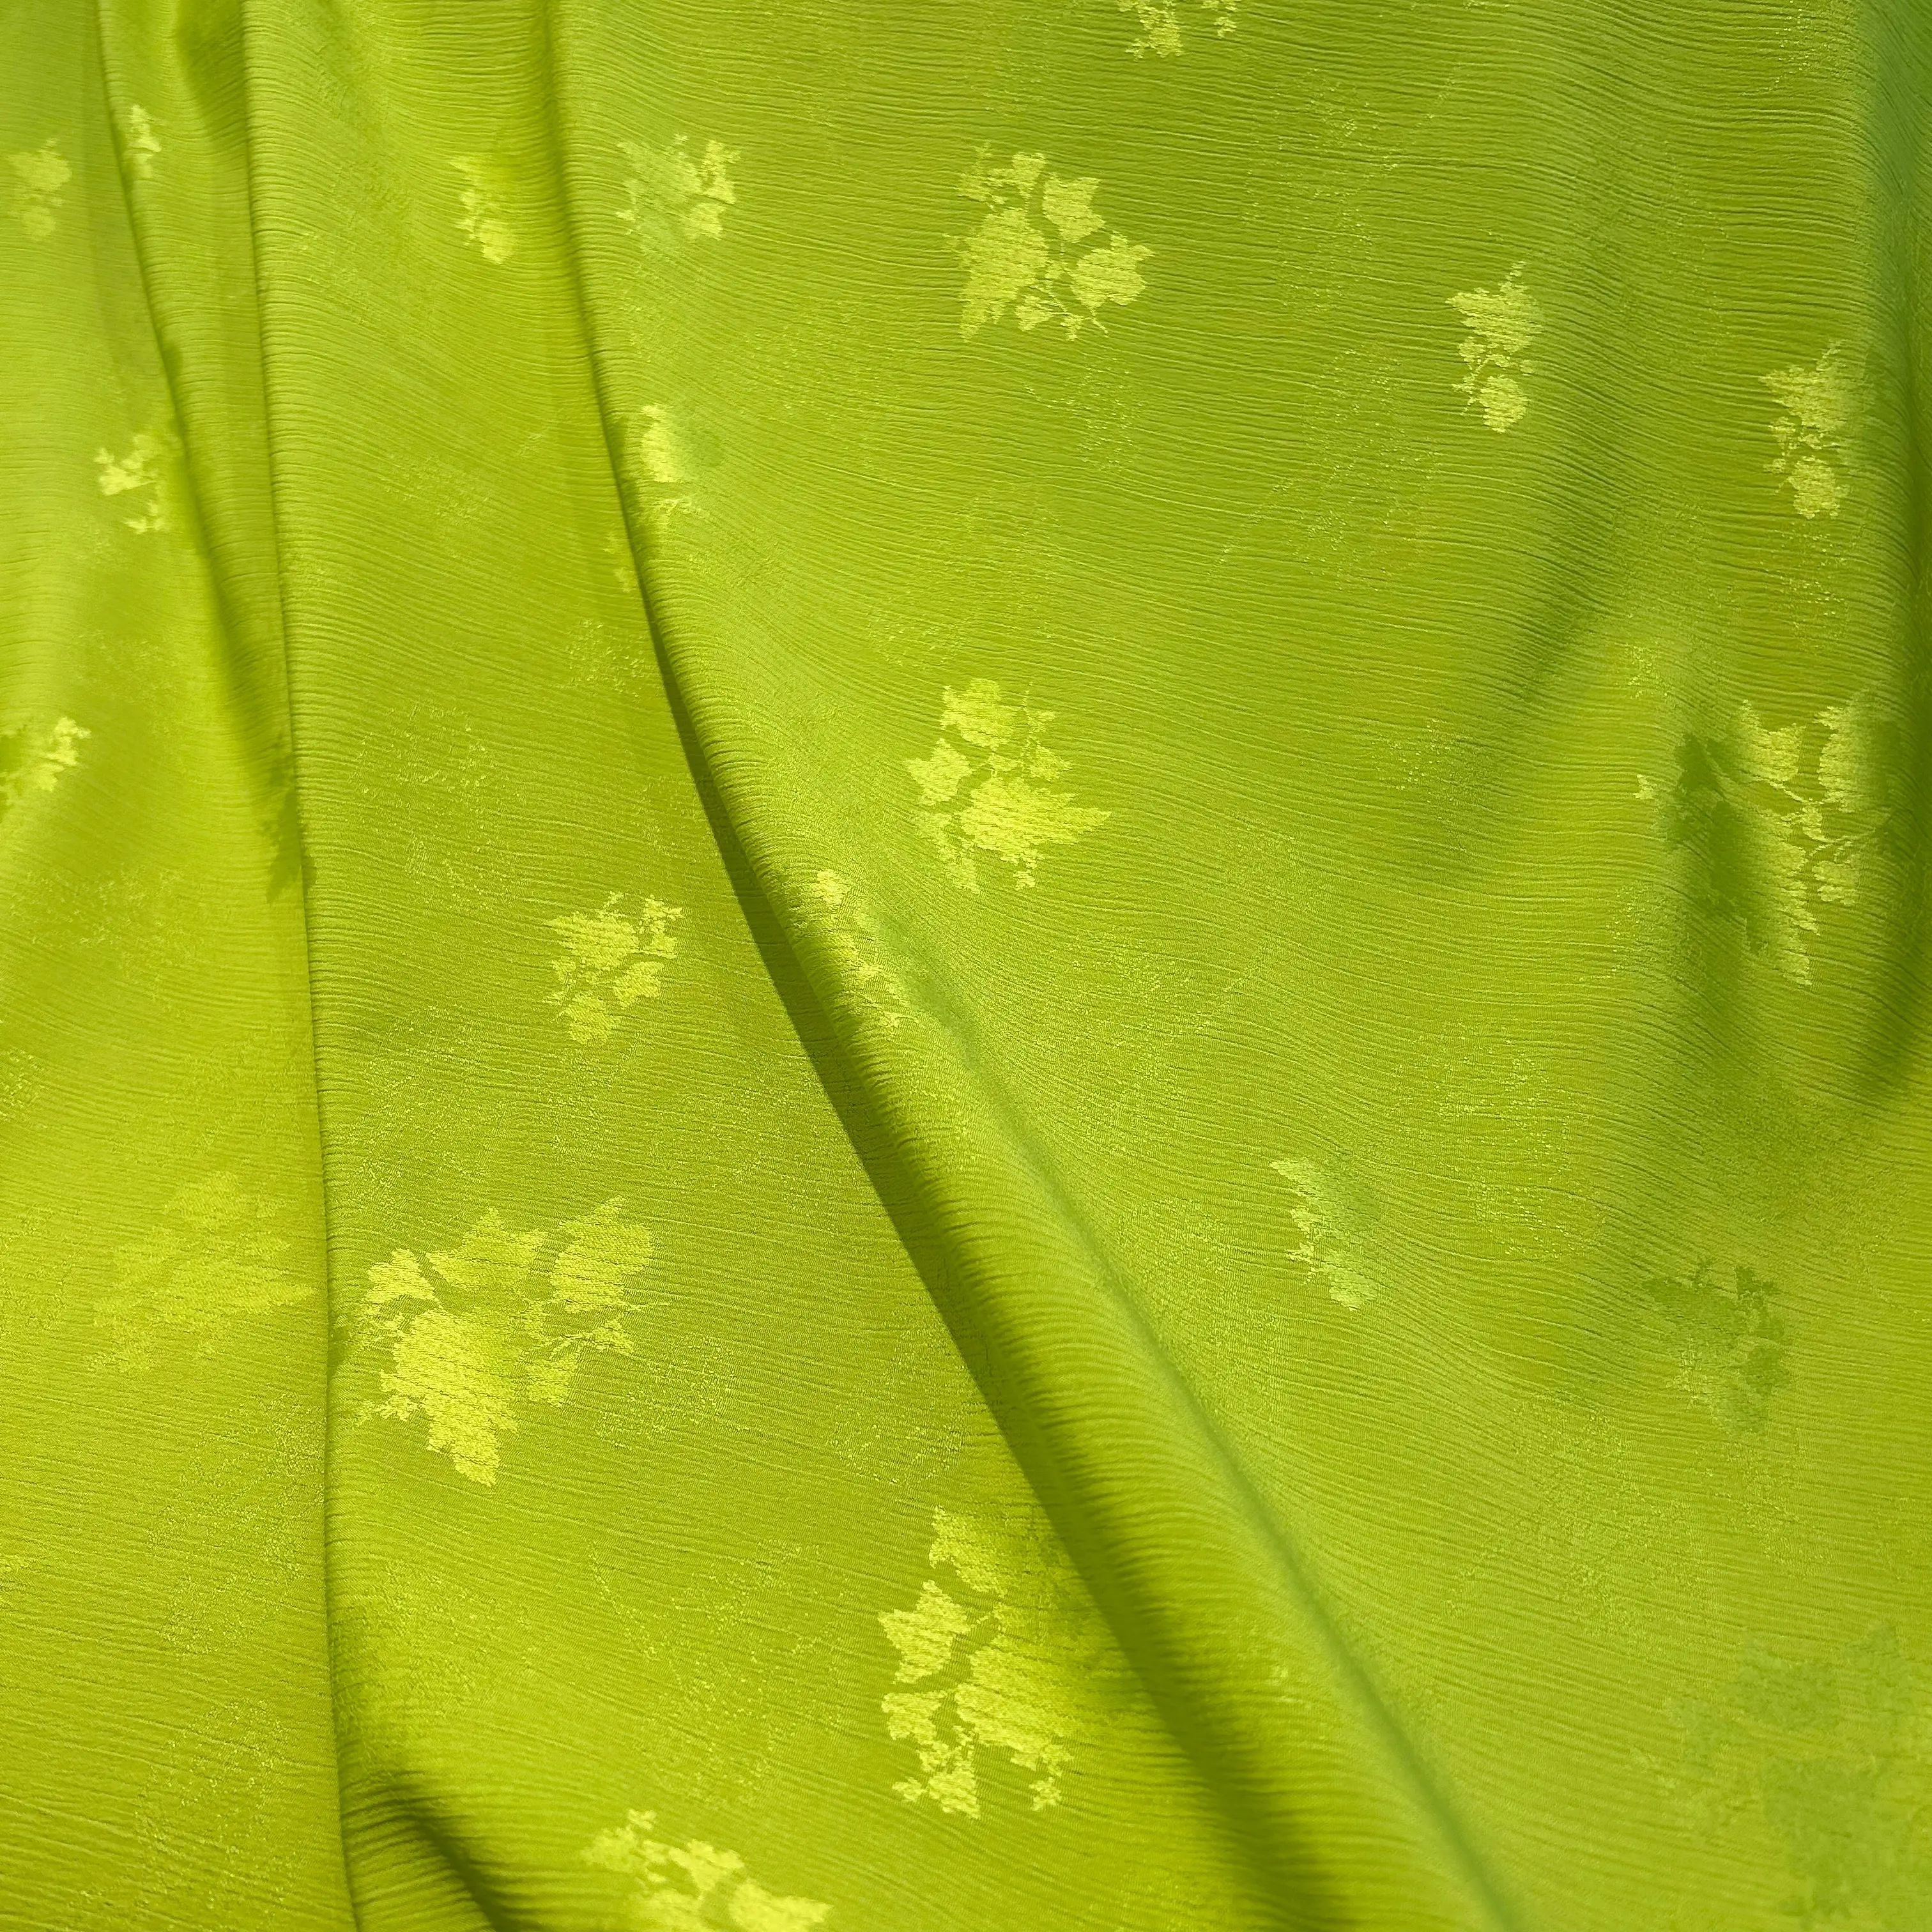 Tissu jacquard gaufré en polyester tissé 1202 avec motif de gaufrage floral dans un tissage de style froissé de saule pour dame Banquet Wear